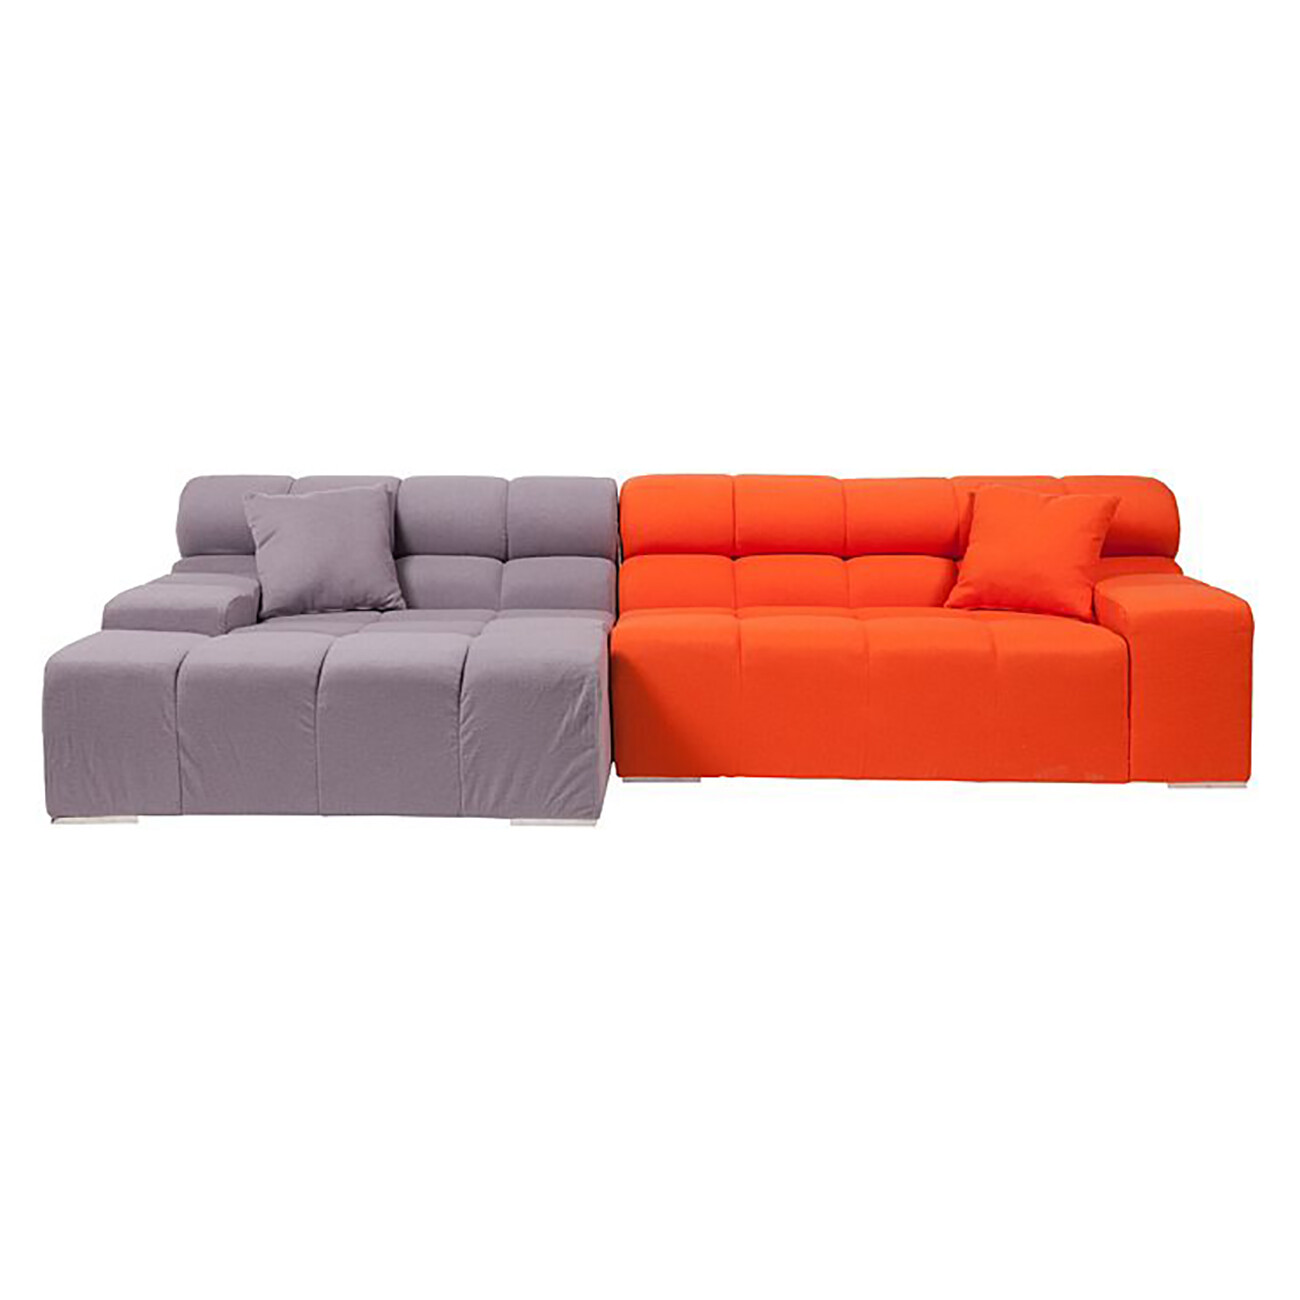 Диван Tufty-Time Sofa угловой модульный серый с оранжевым